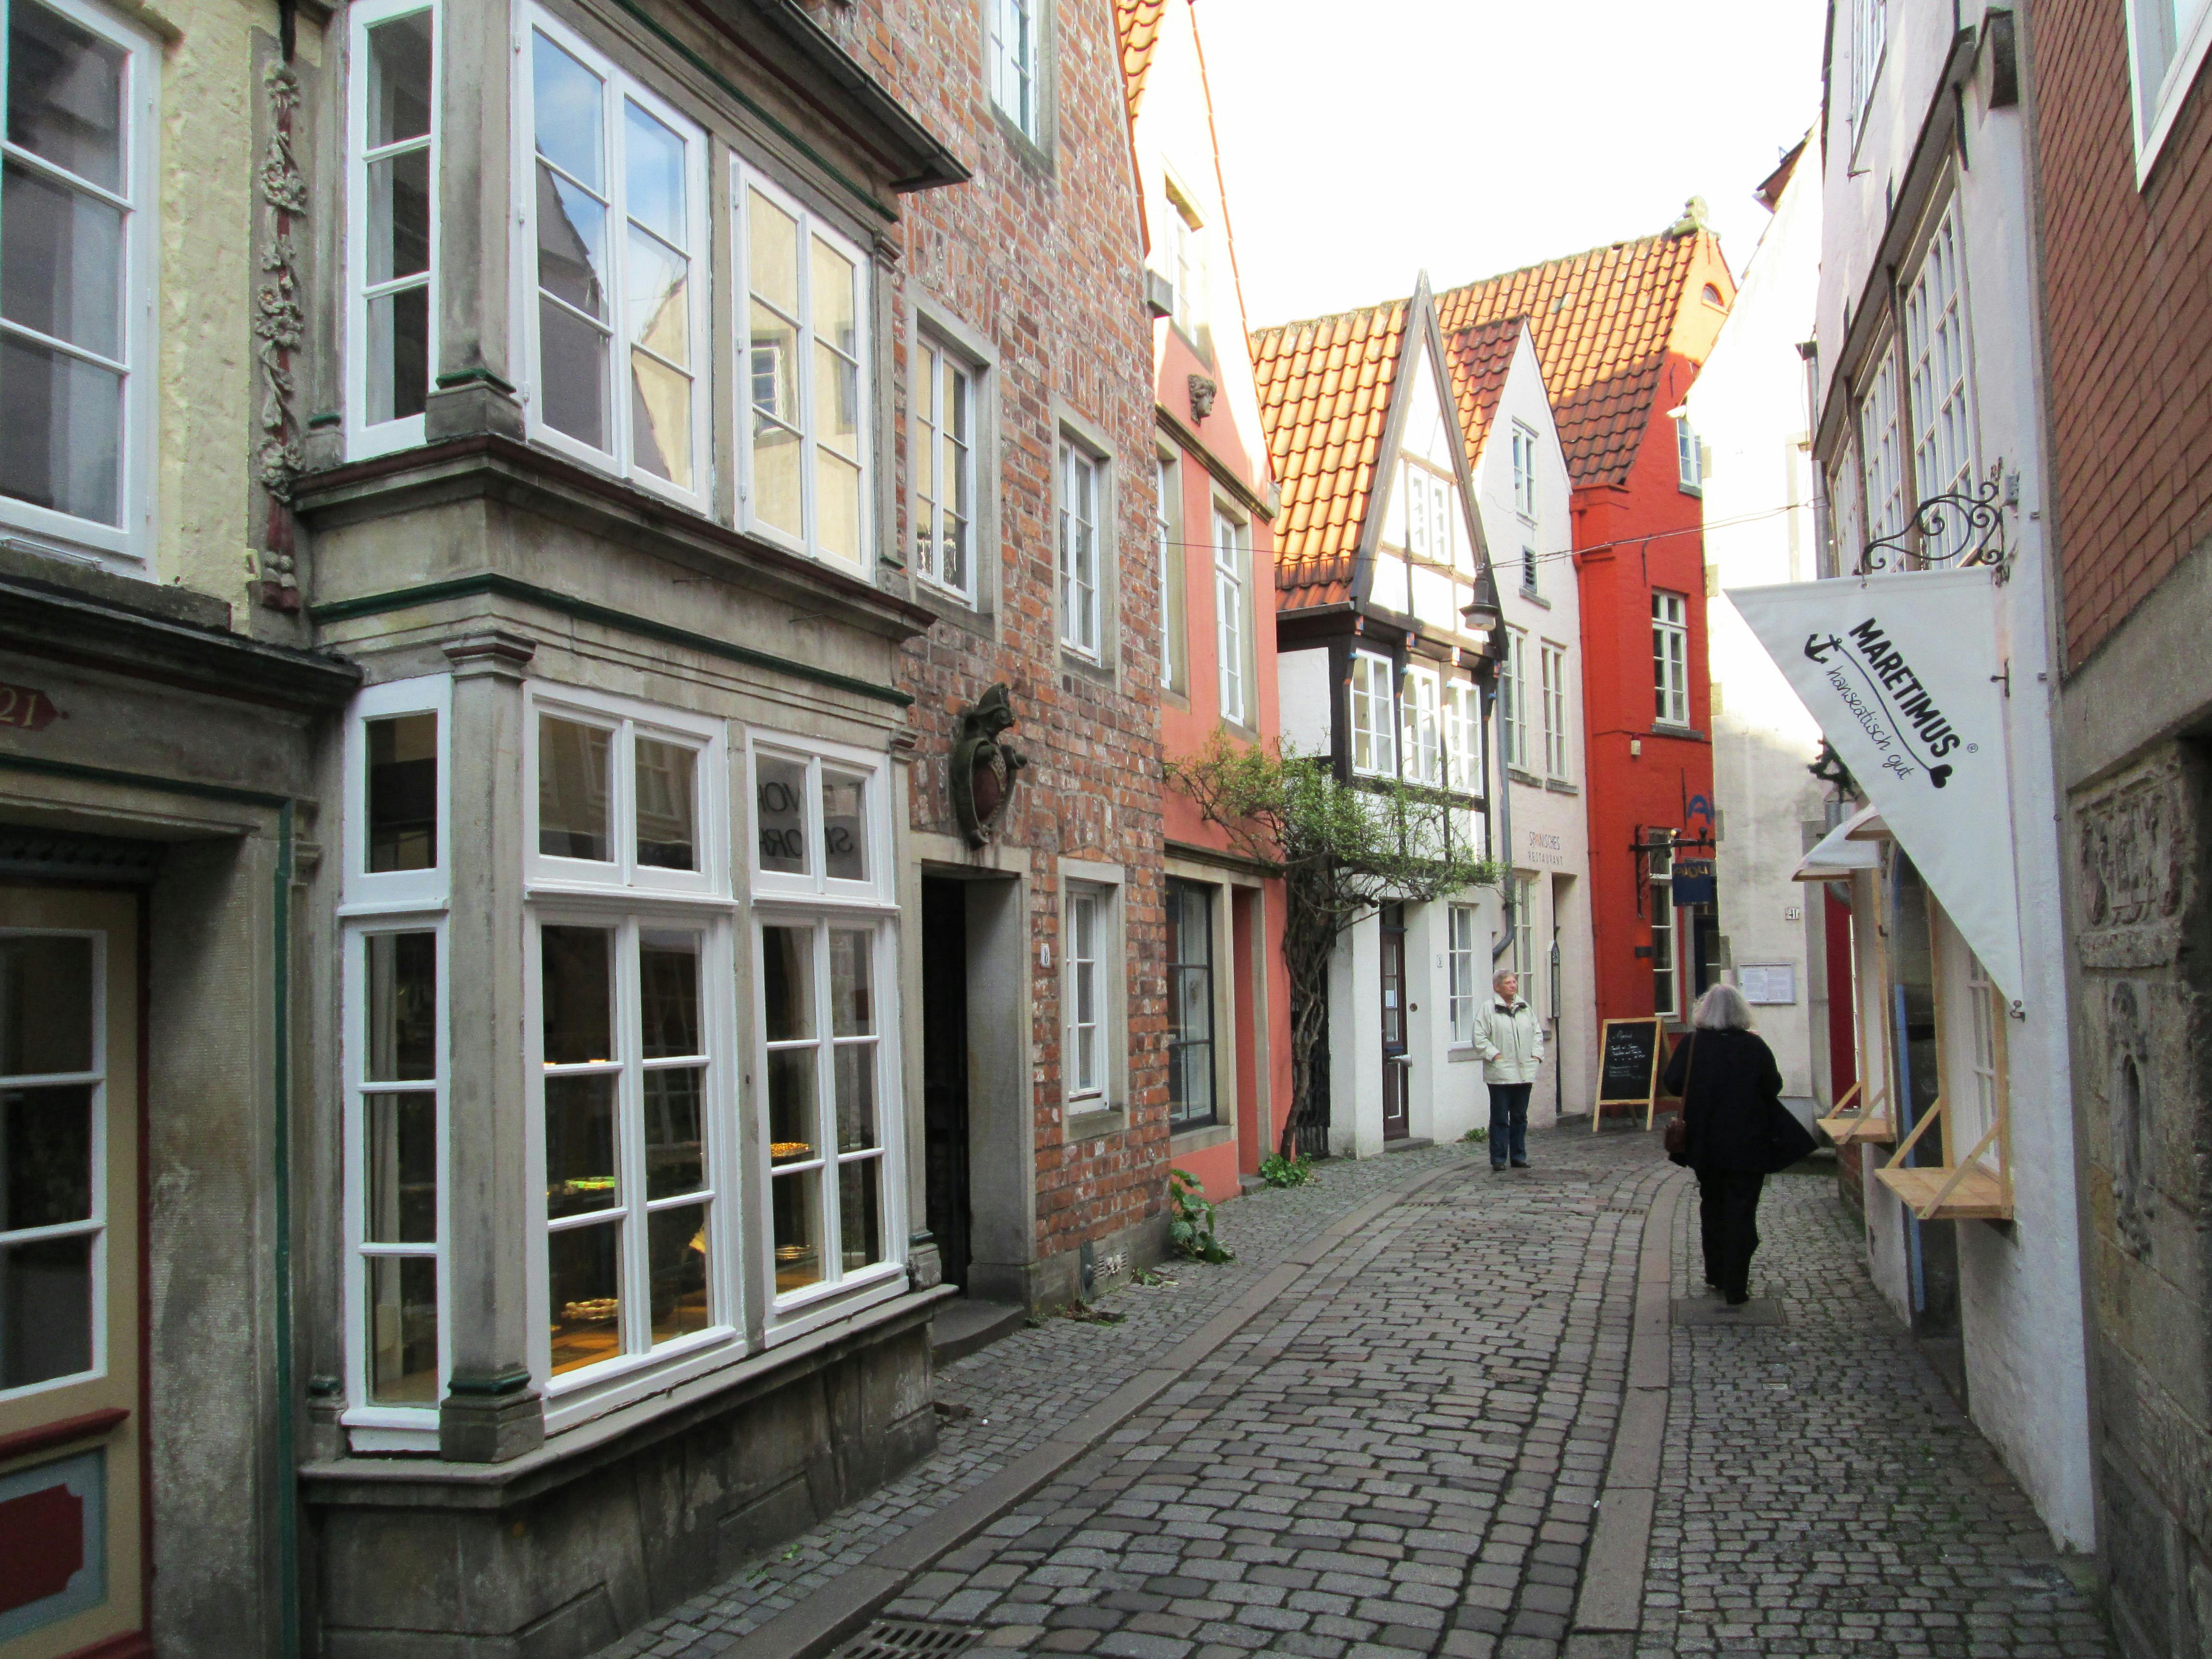 Wycieczka piesza z przewodnikiem po dzielnicy Schnoor w Bremie